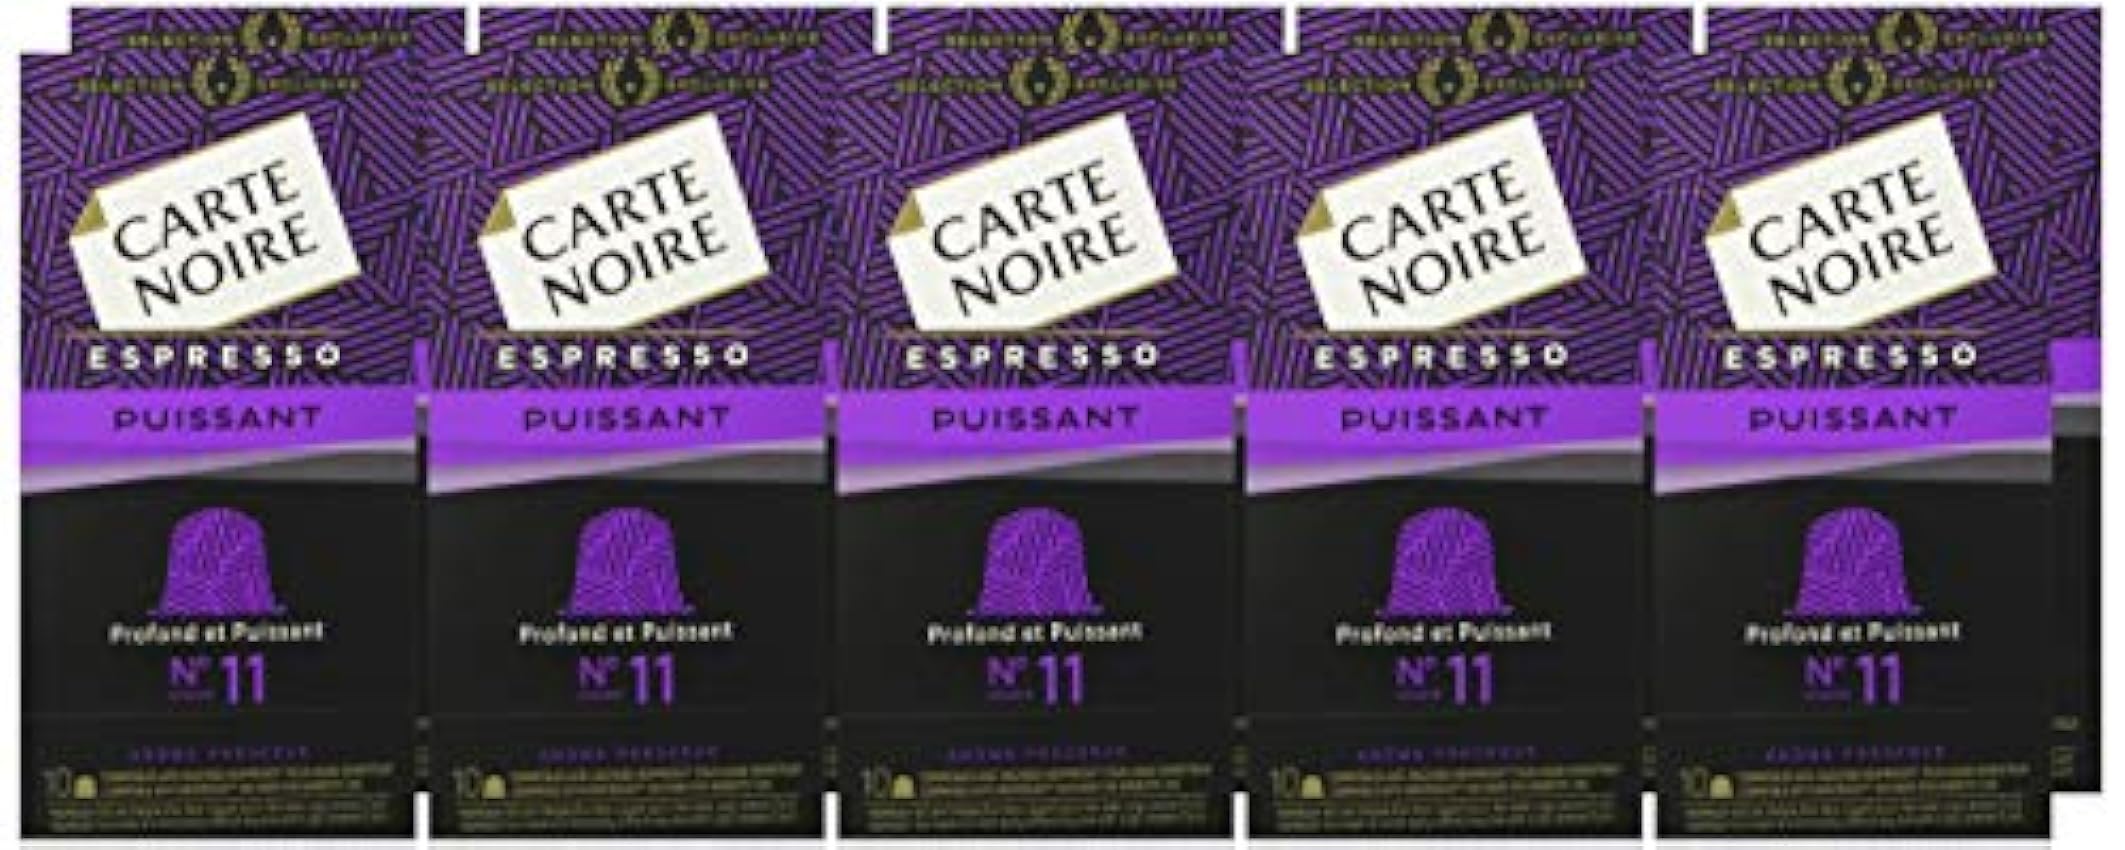 Carte Noire Café Espresso Puissant N°11 Capsules Compatibles Nespresso, 10 Paquets de 10 capsules (100 Capsules) OMDpl3vv